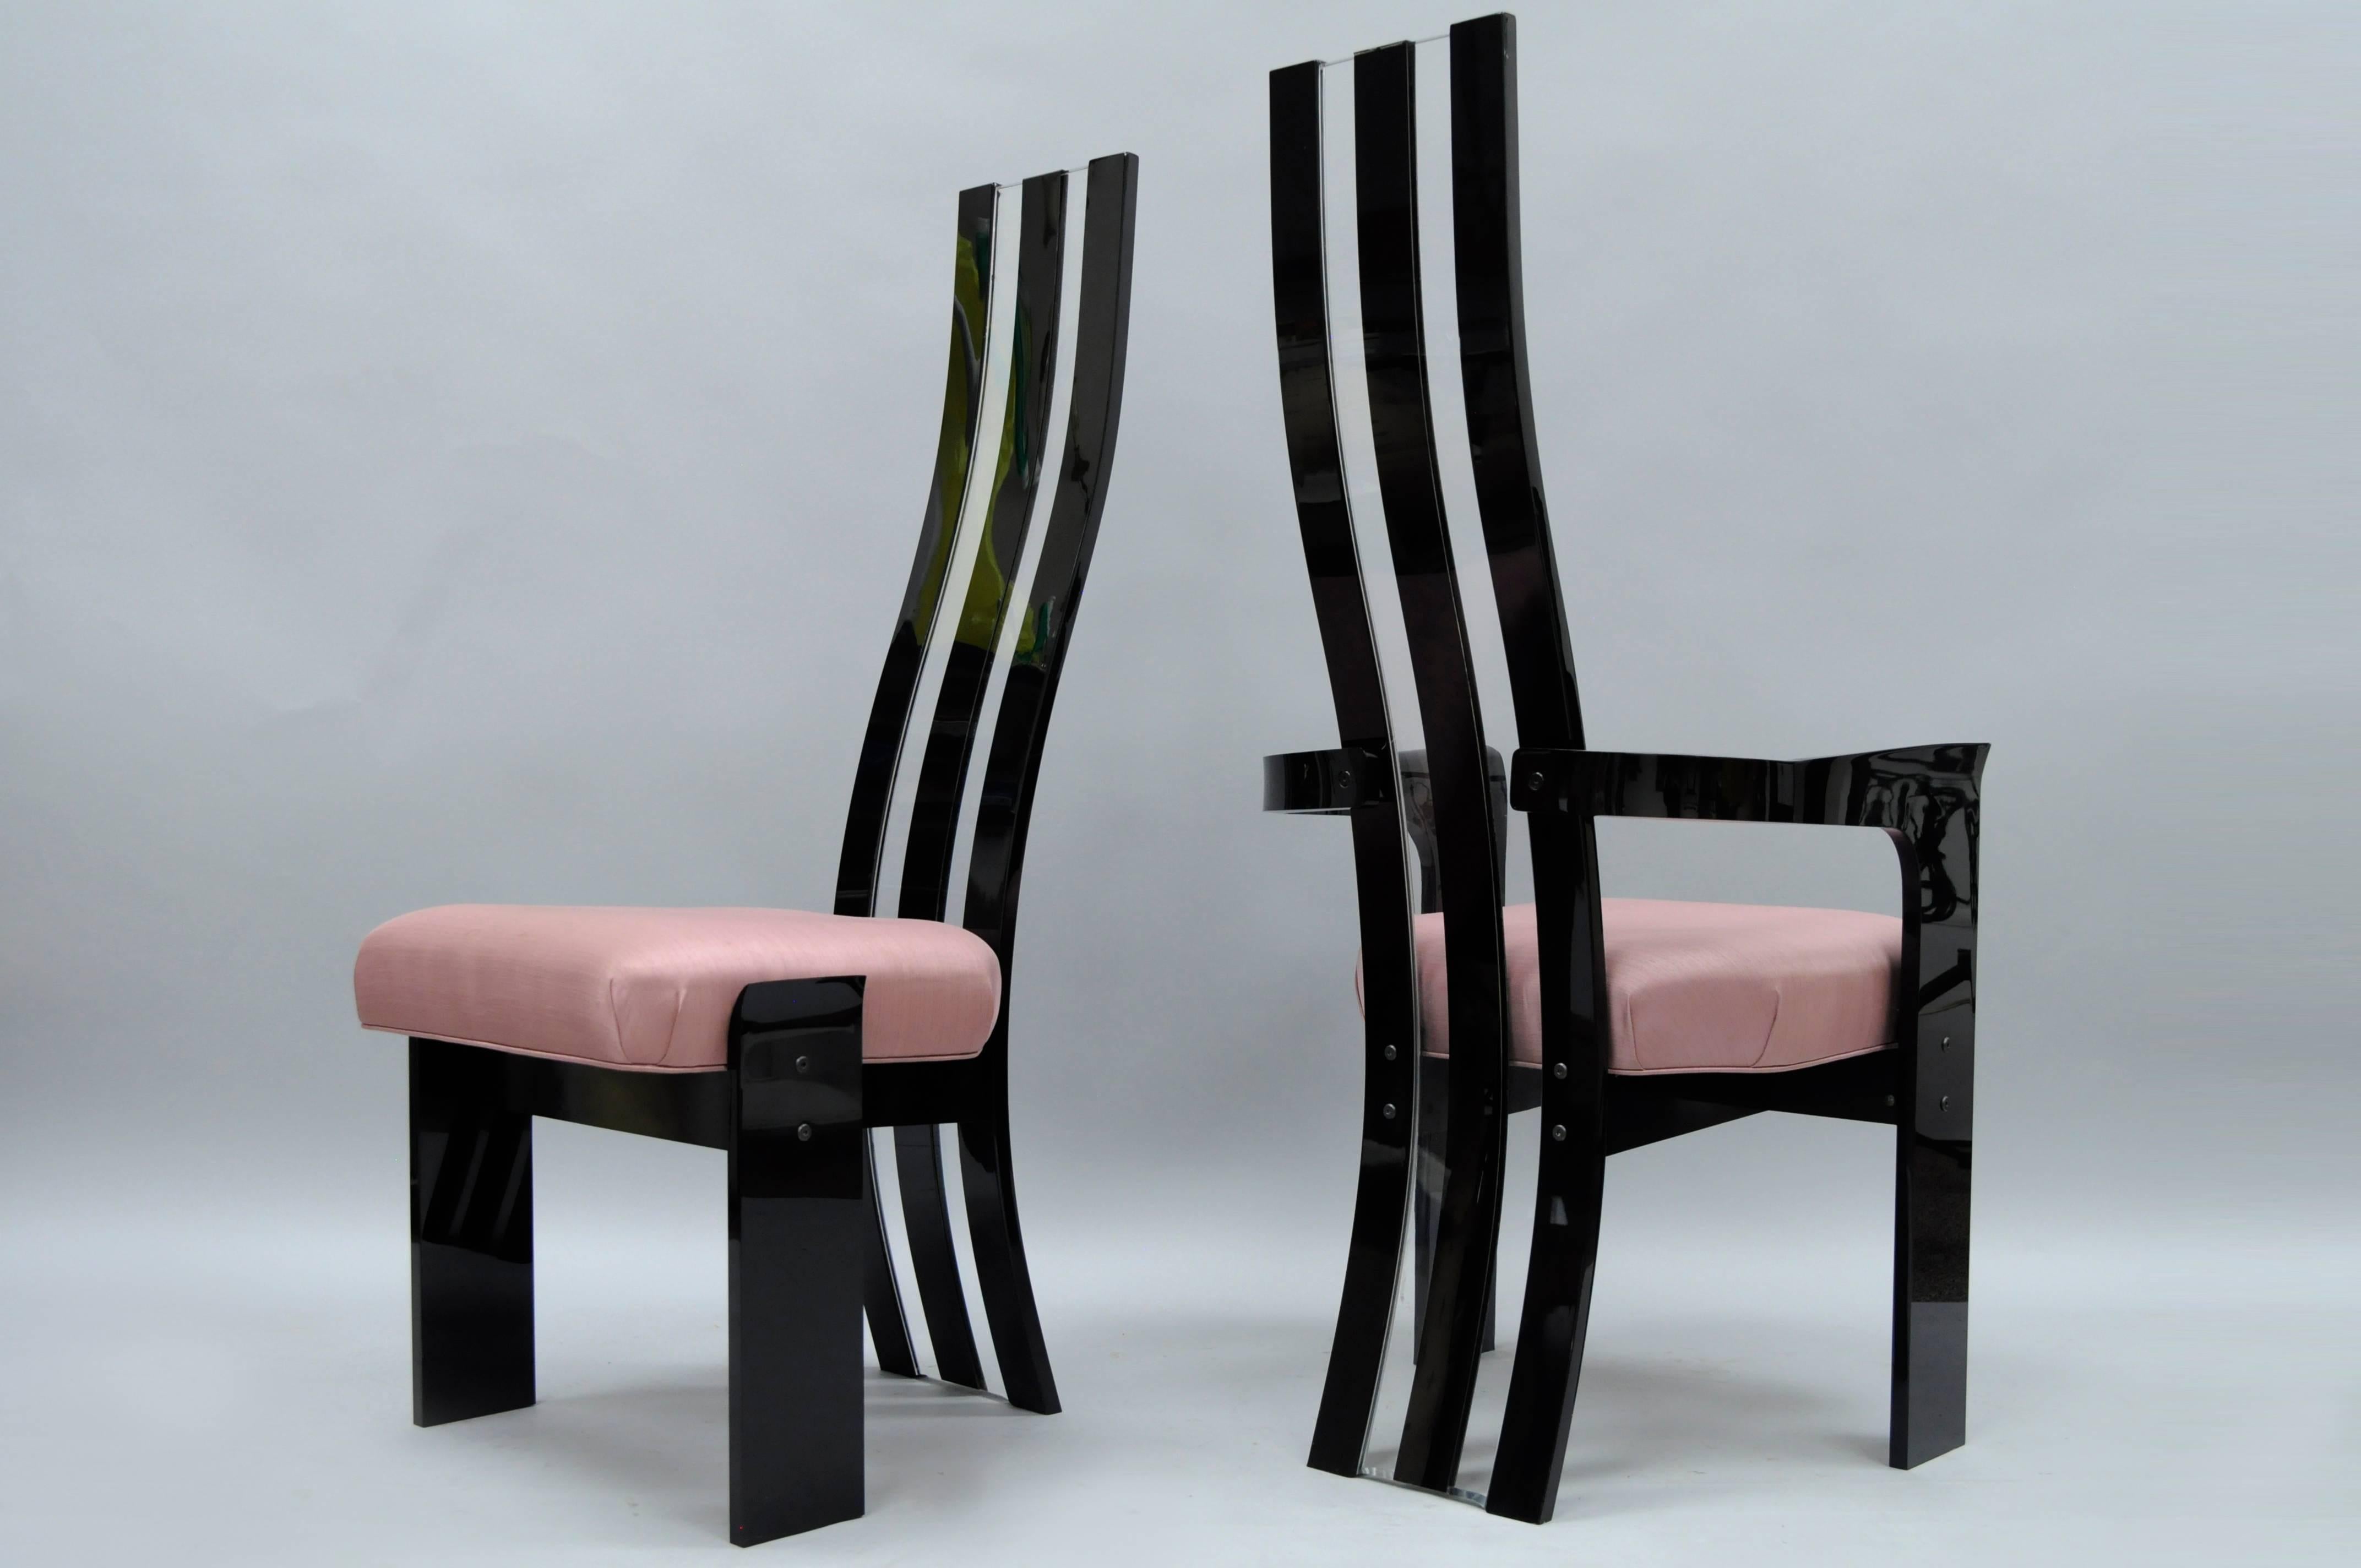 Ensemble de 6 chaises de salle à manger sculpturales en Lucite noir et transparent, de style moderne du milieu du siècle, par Hille Manufacturing. L'ensemble comprend deux fauteuils, quatre chaises d'appoint, de hauts dossiers sculptés noirs et